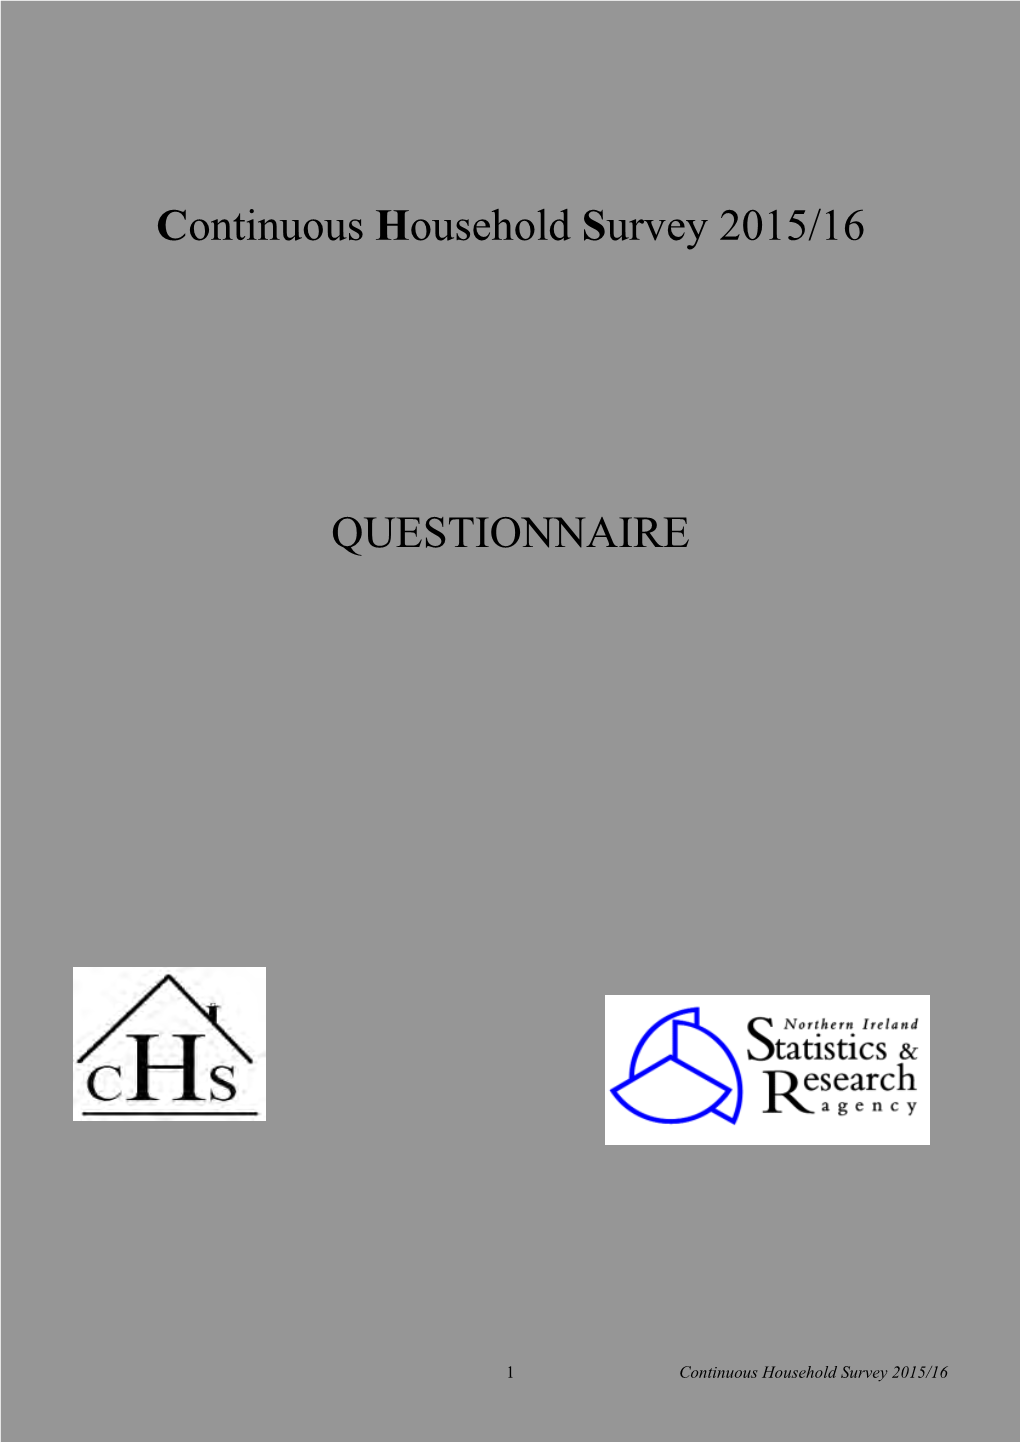 Continuous Household Survey Questionnaire 2015-16